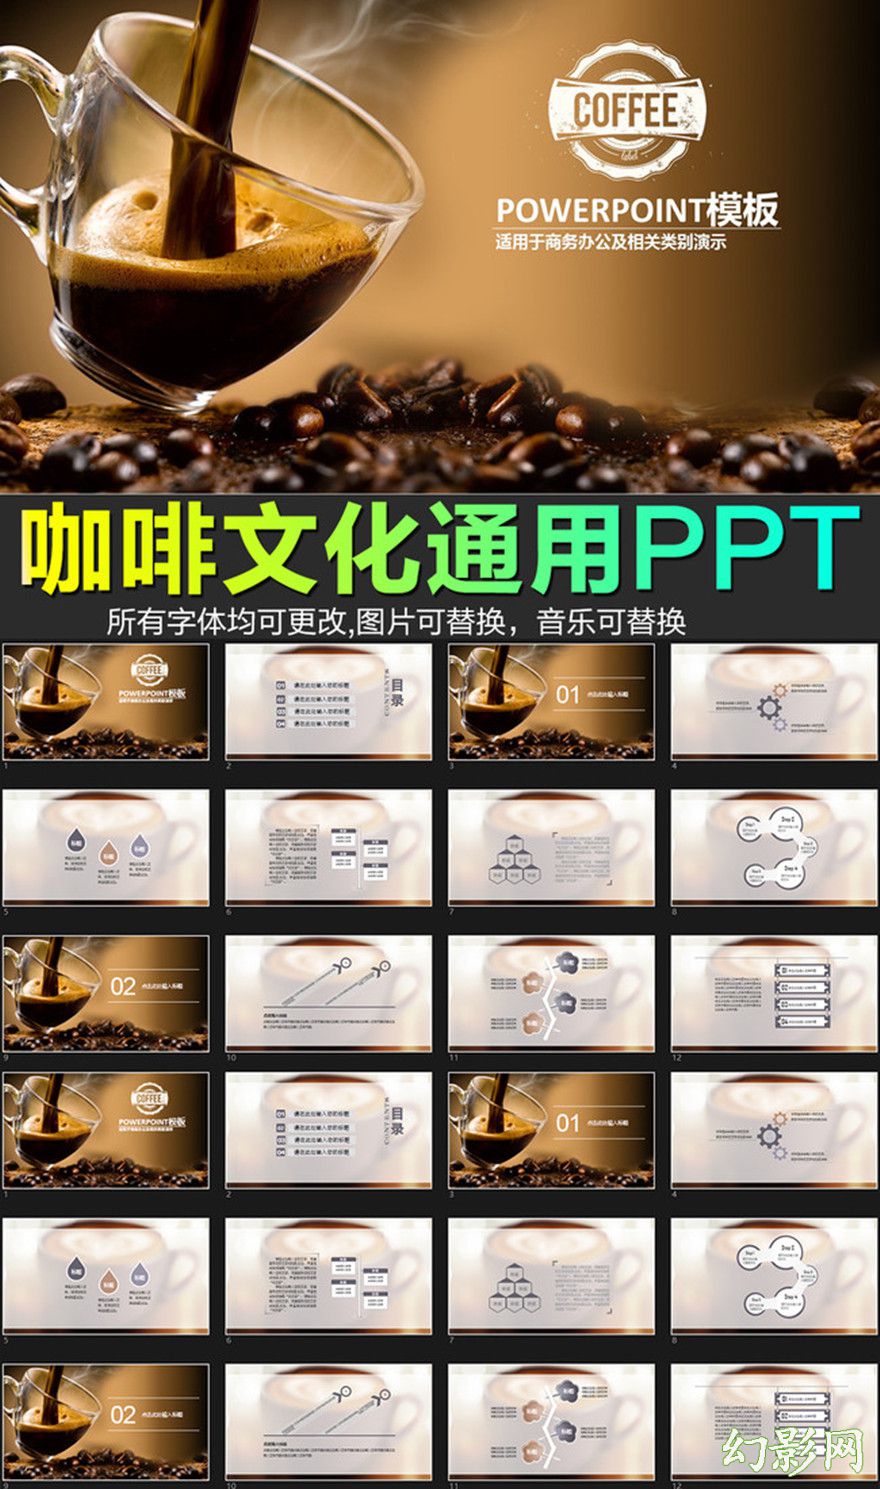 咖啡产品介绍下午茶咖啡厅PPT模板